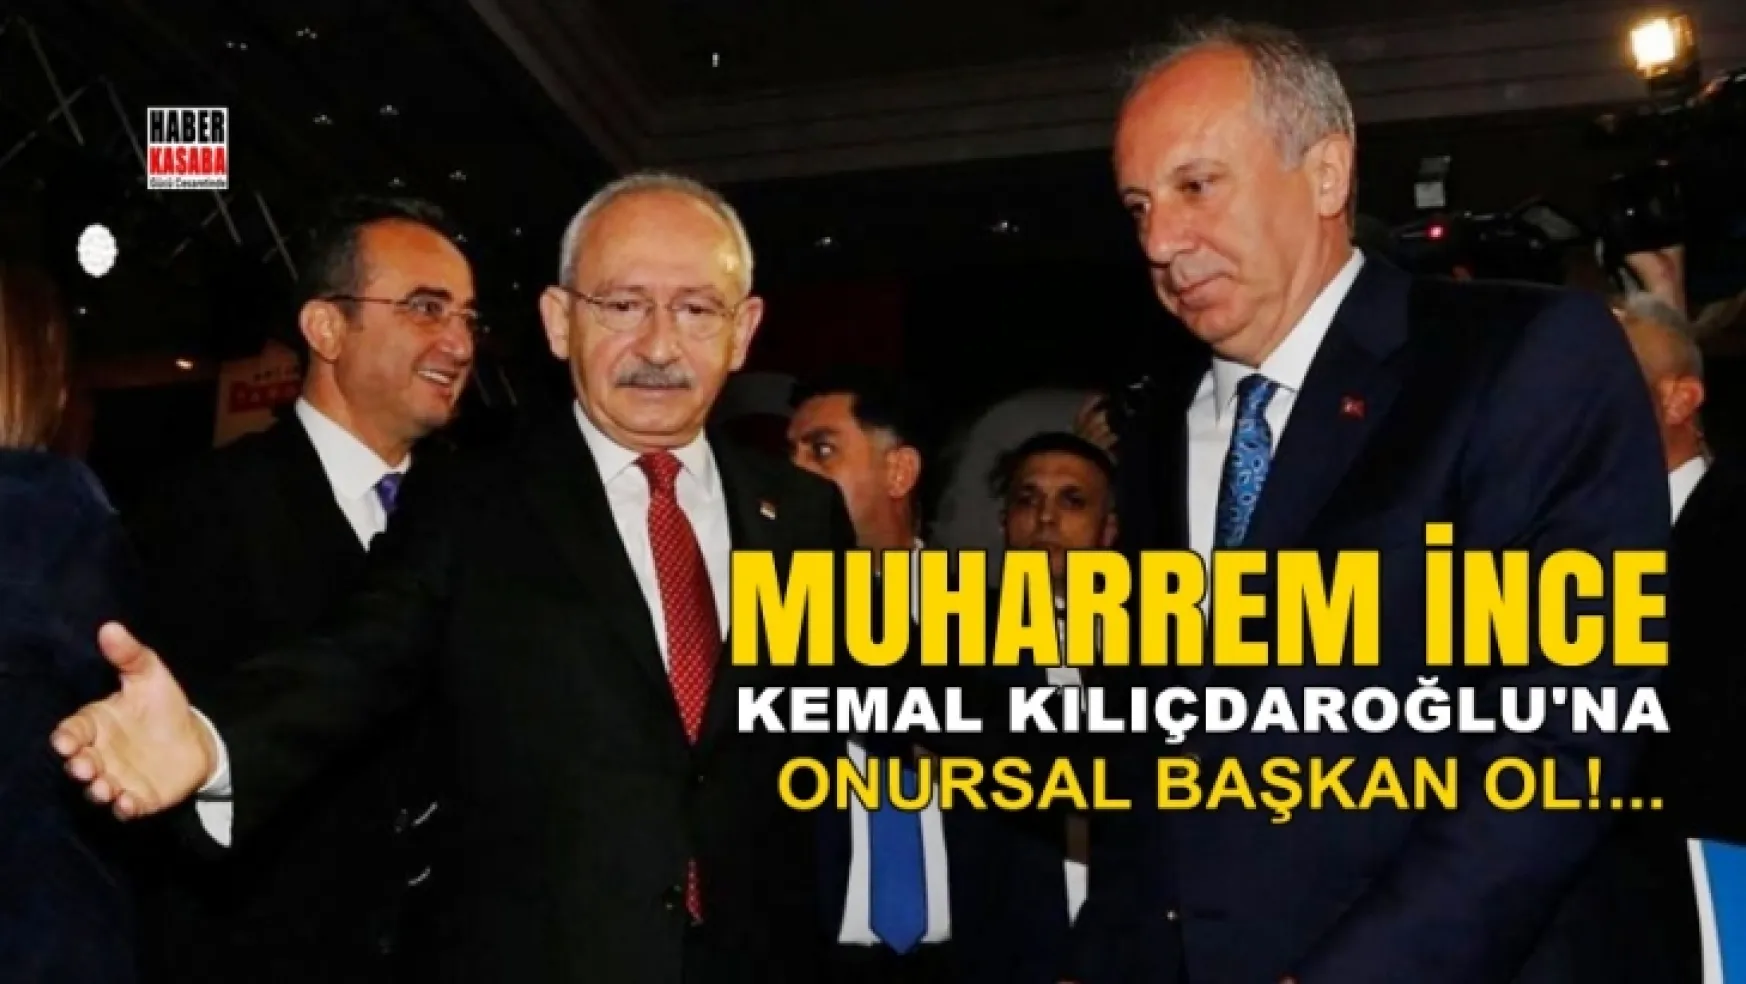 Muharrem İnce Kılıçdaroğlu'na Onursal genel başkan ol